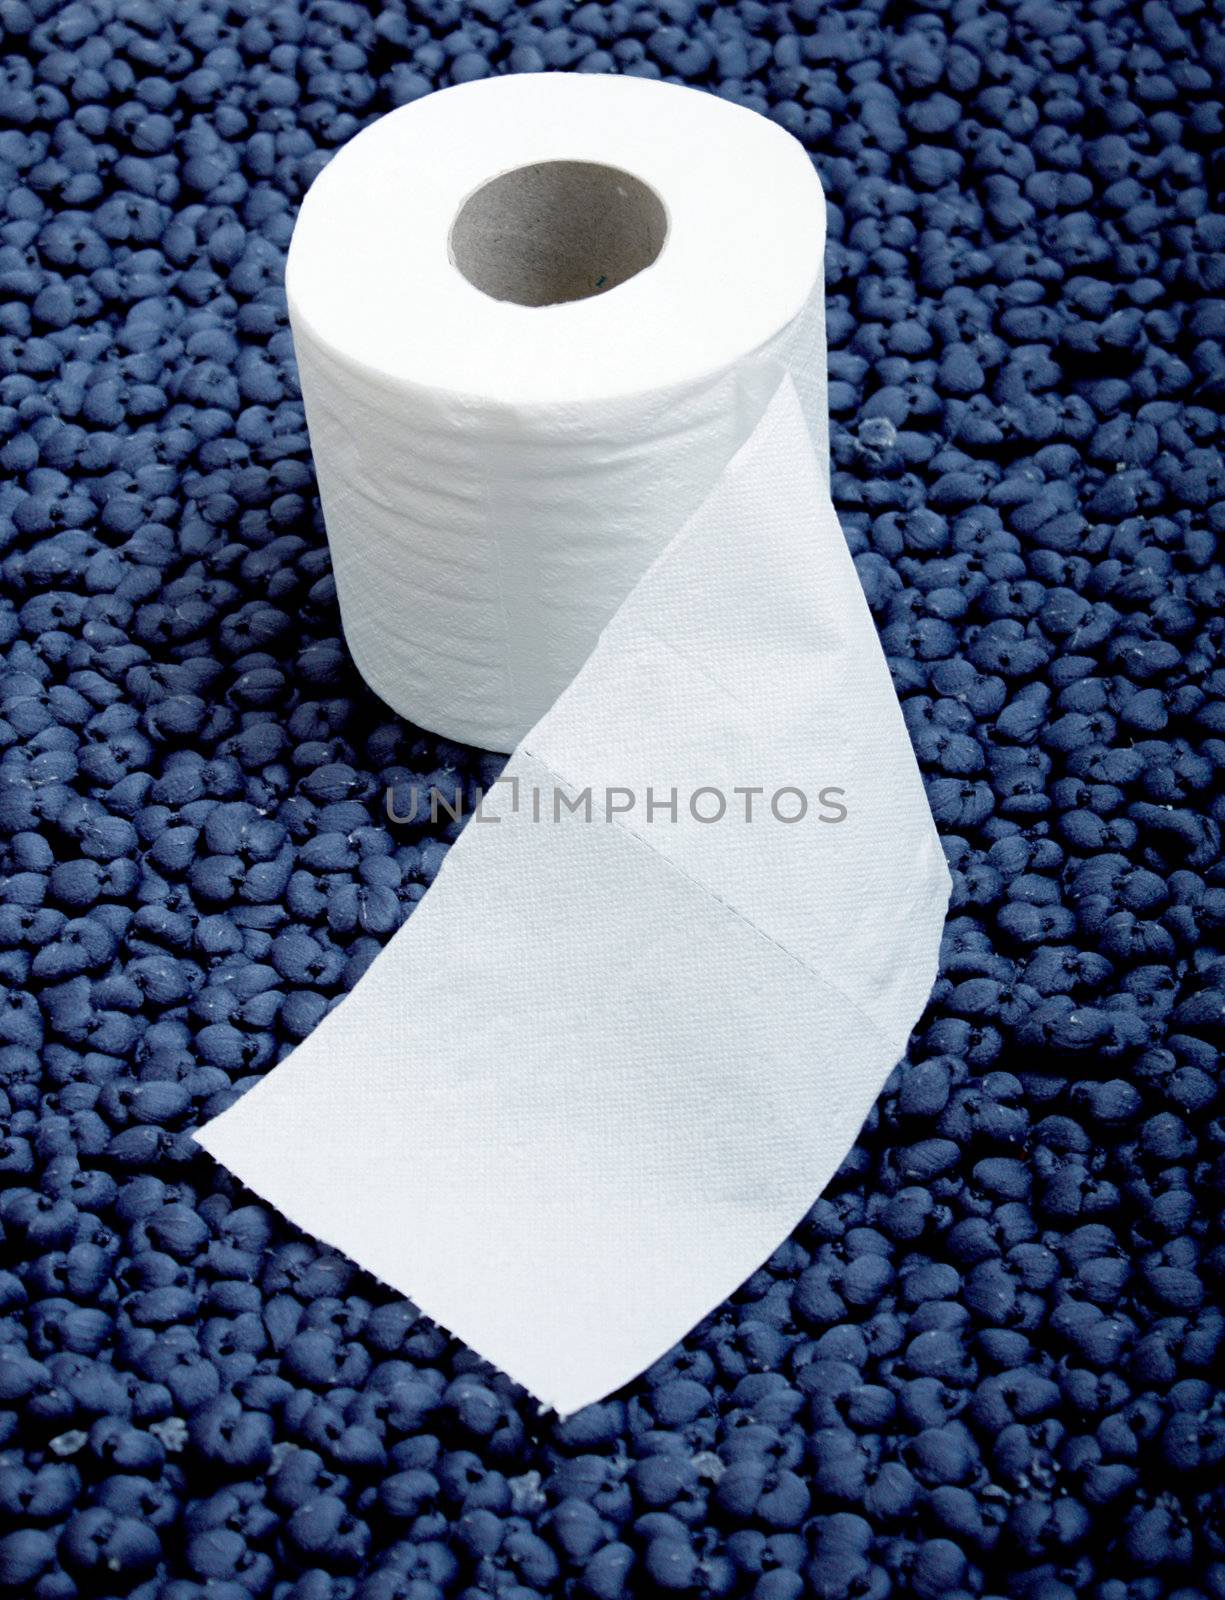 Toiletpaper by leeser